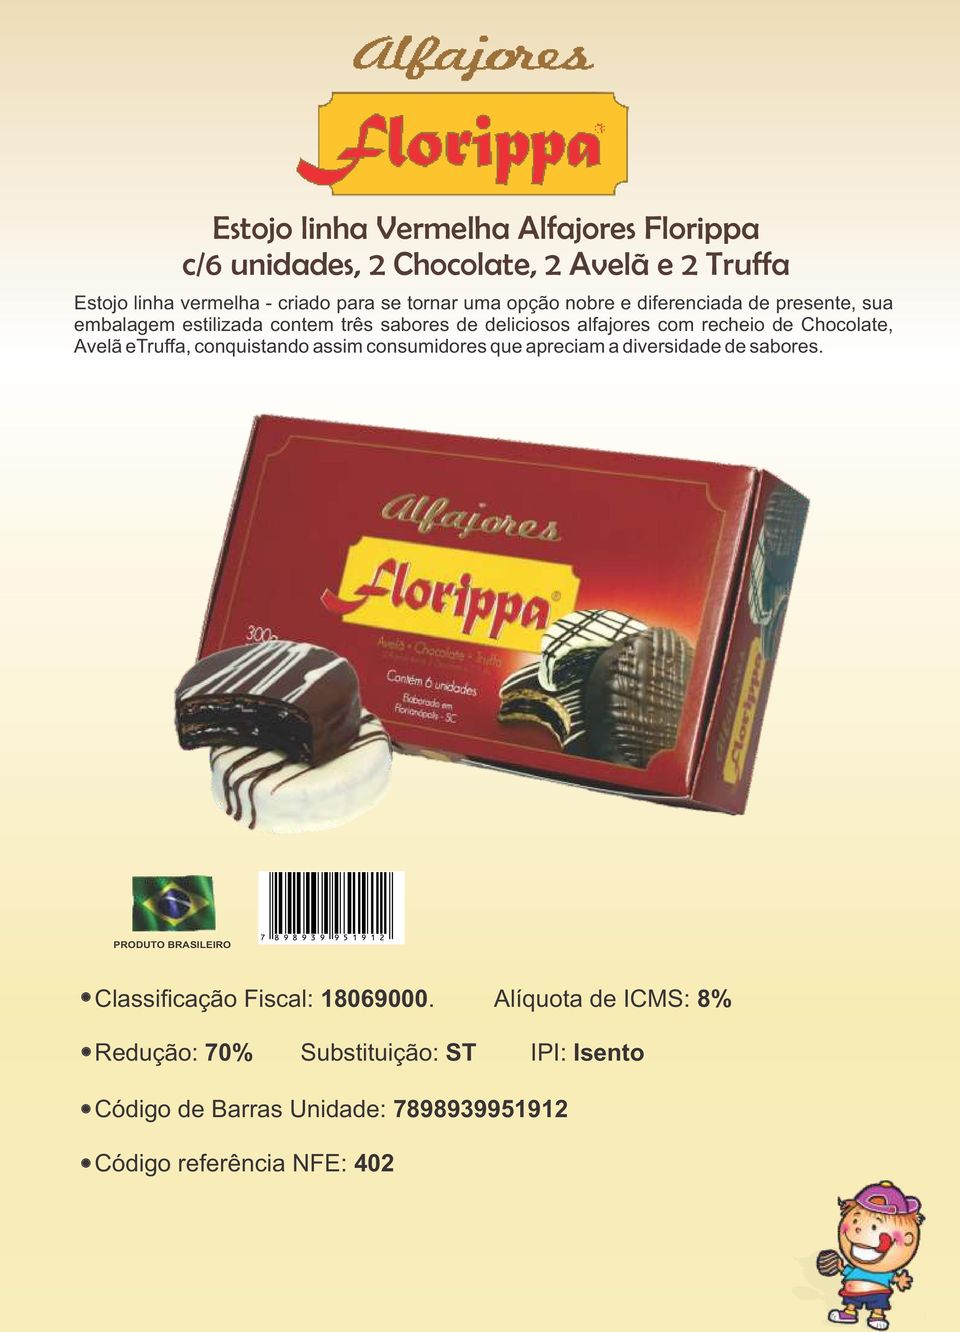 sabores de deliciosos alfajores com recheio de Chocolate, Avelã etruffa, conquistando assim consumidores que